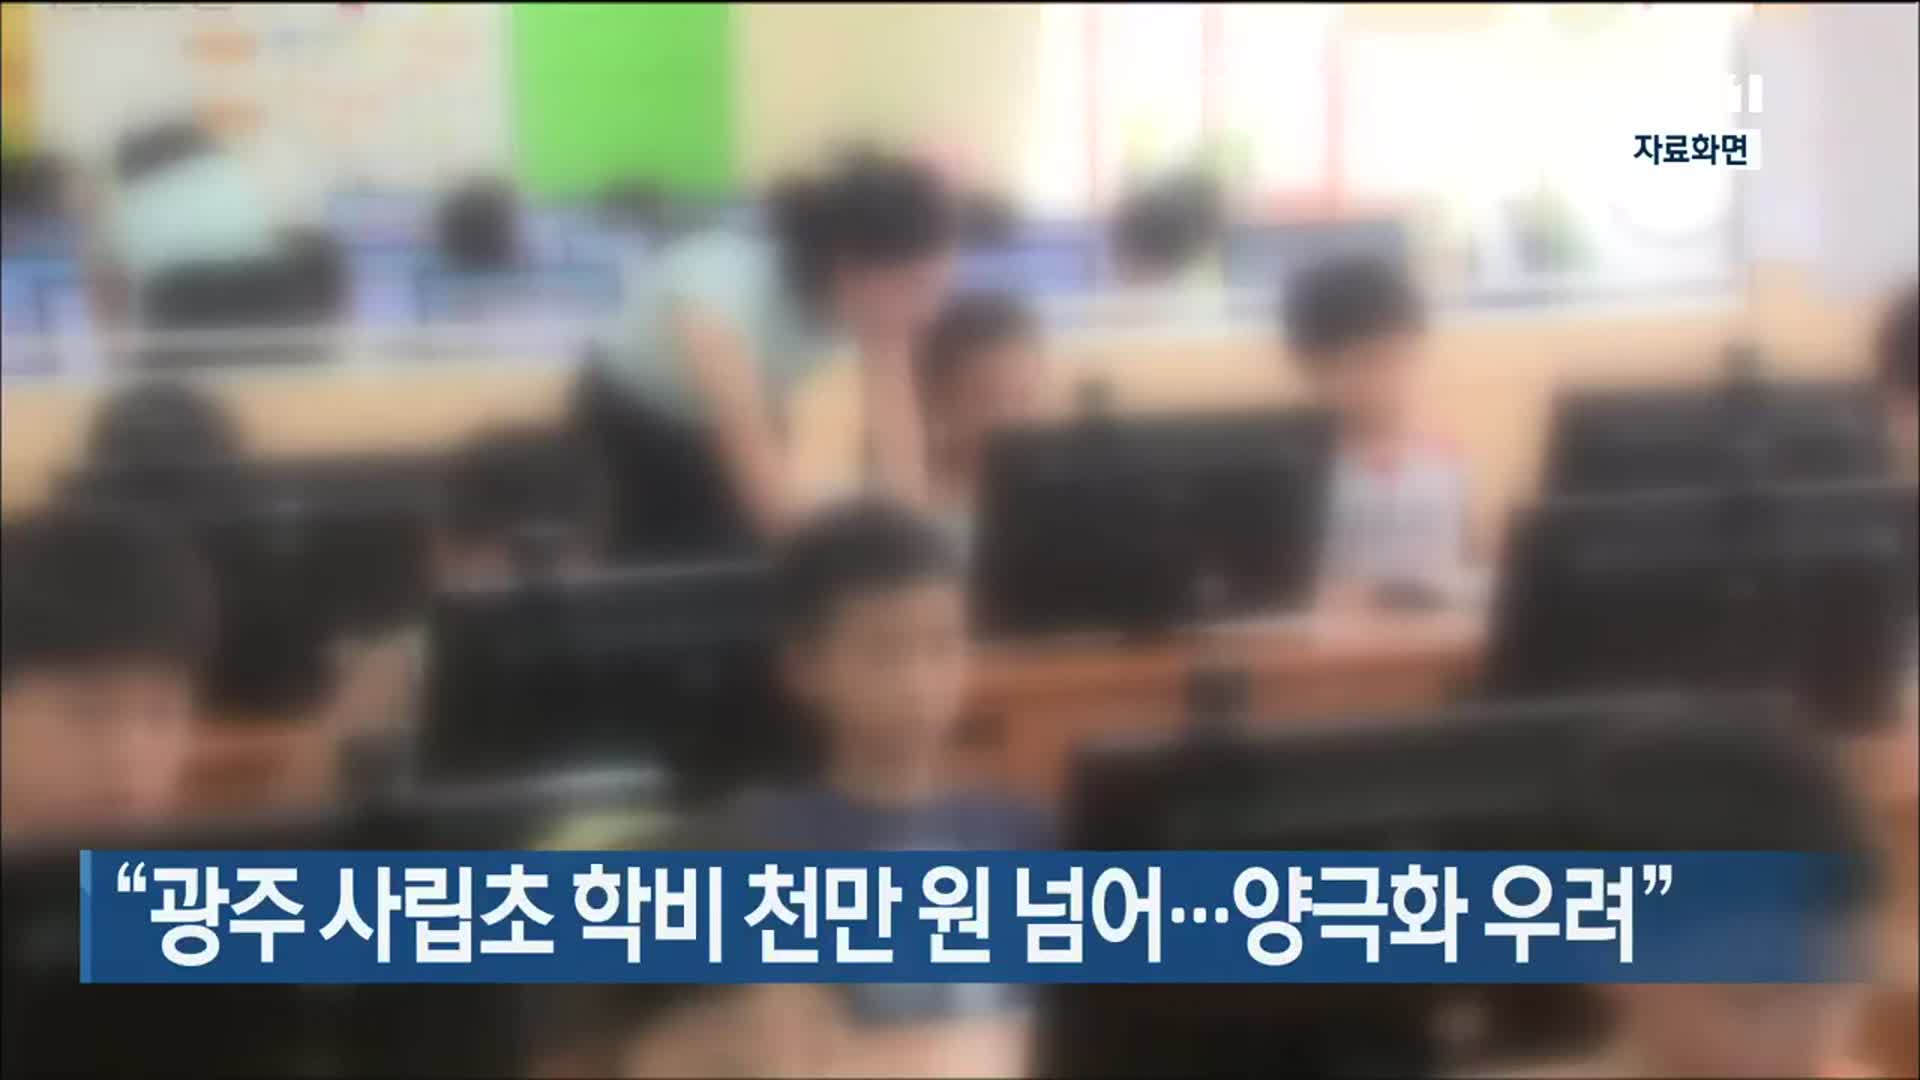 “광주 사립초 학비 천만 원 넘어…양극화 우려”